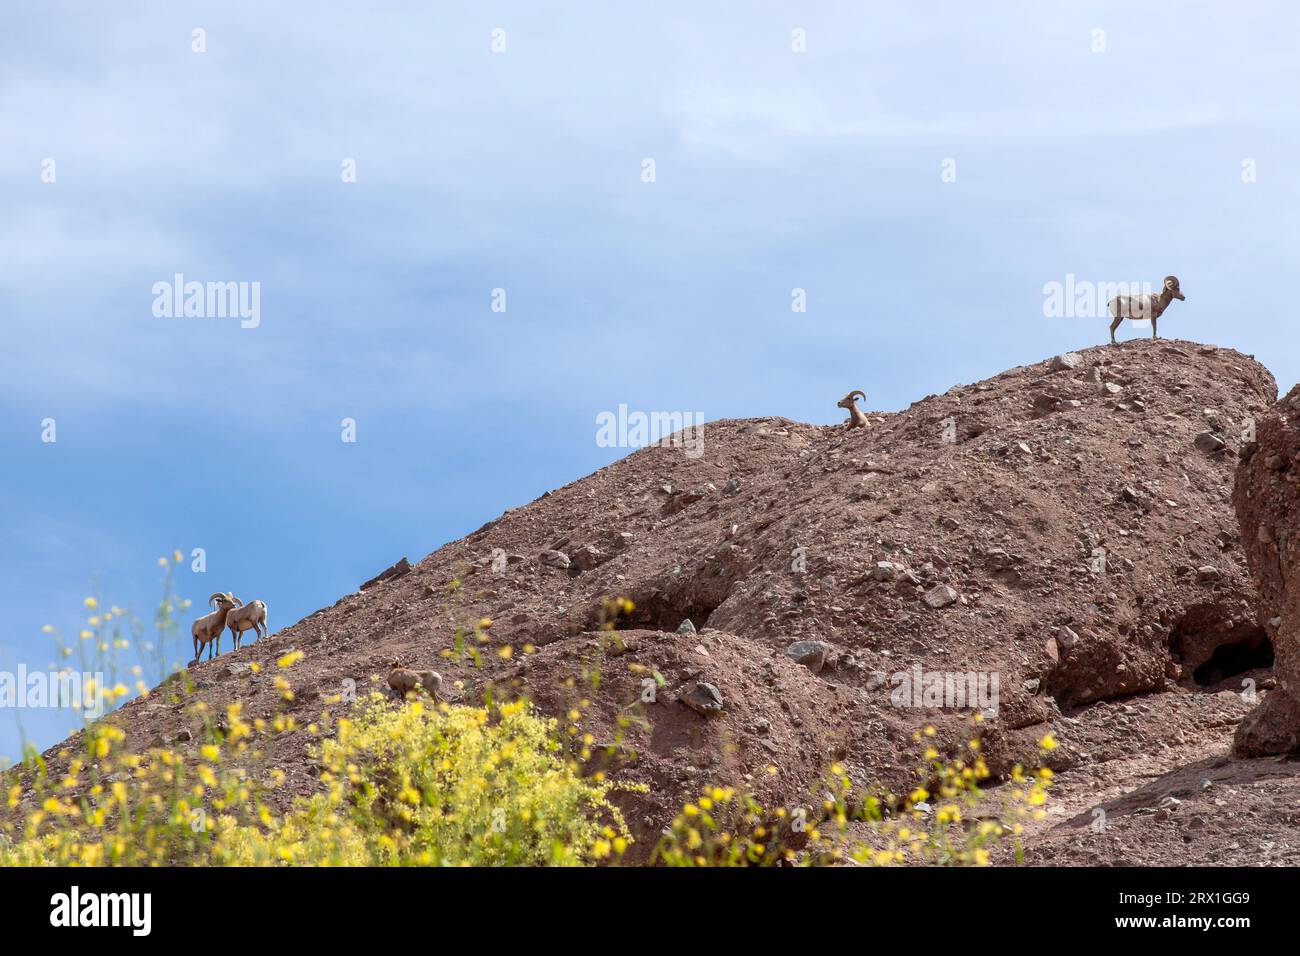 Grand mouton de corne sur rocher rocheux fleurs jaunes au premier plan Banque D'Images